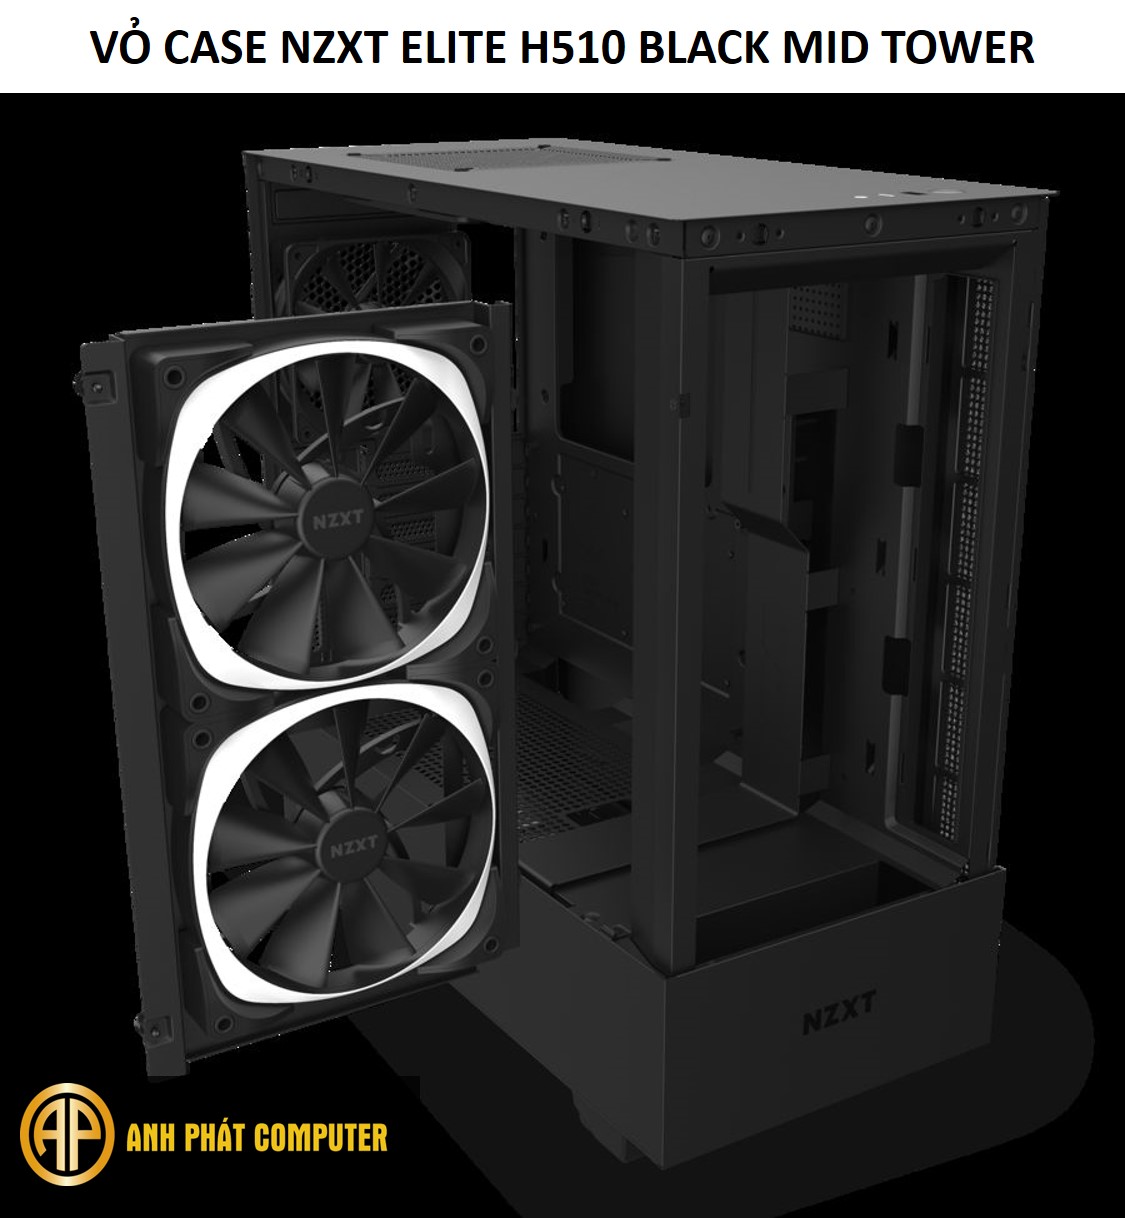 Thùng cpu chơi game Nzxt Elite H510 Black Mid tower